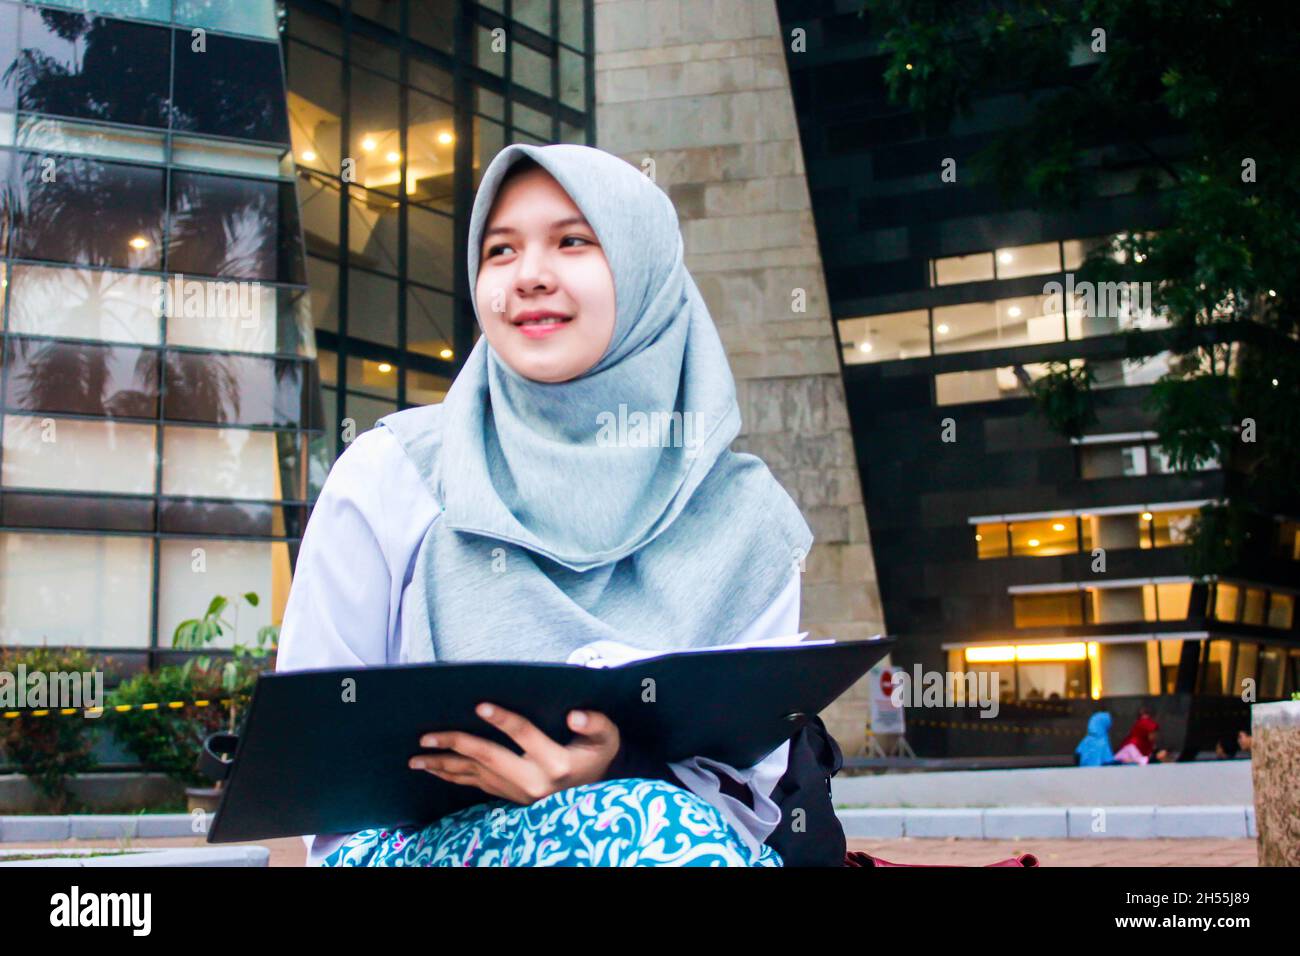 Mujer universitaria musulmana del sudeste asiático con hijab de color azul celeste sosteniendo un libro. Foto de stock